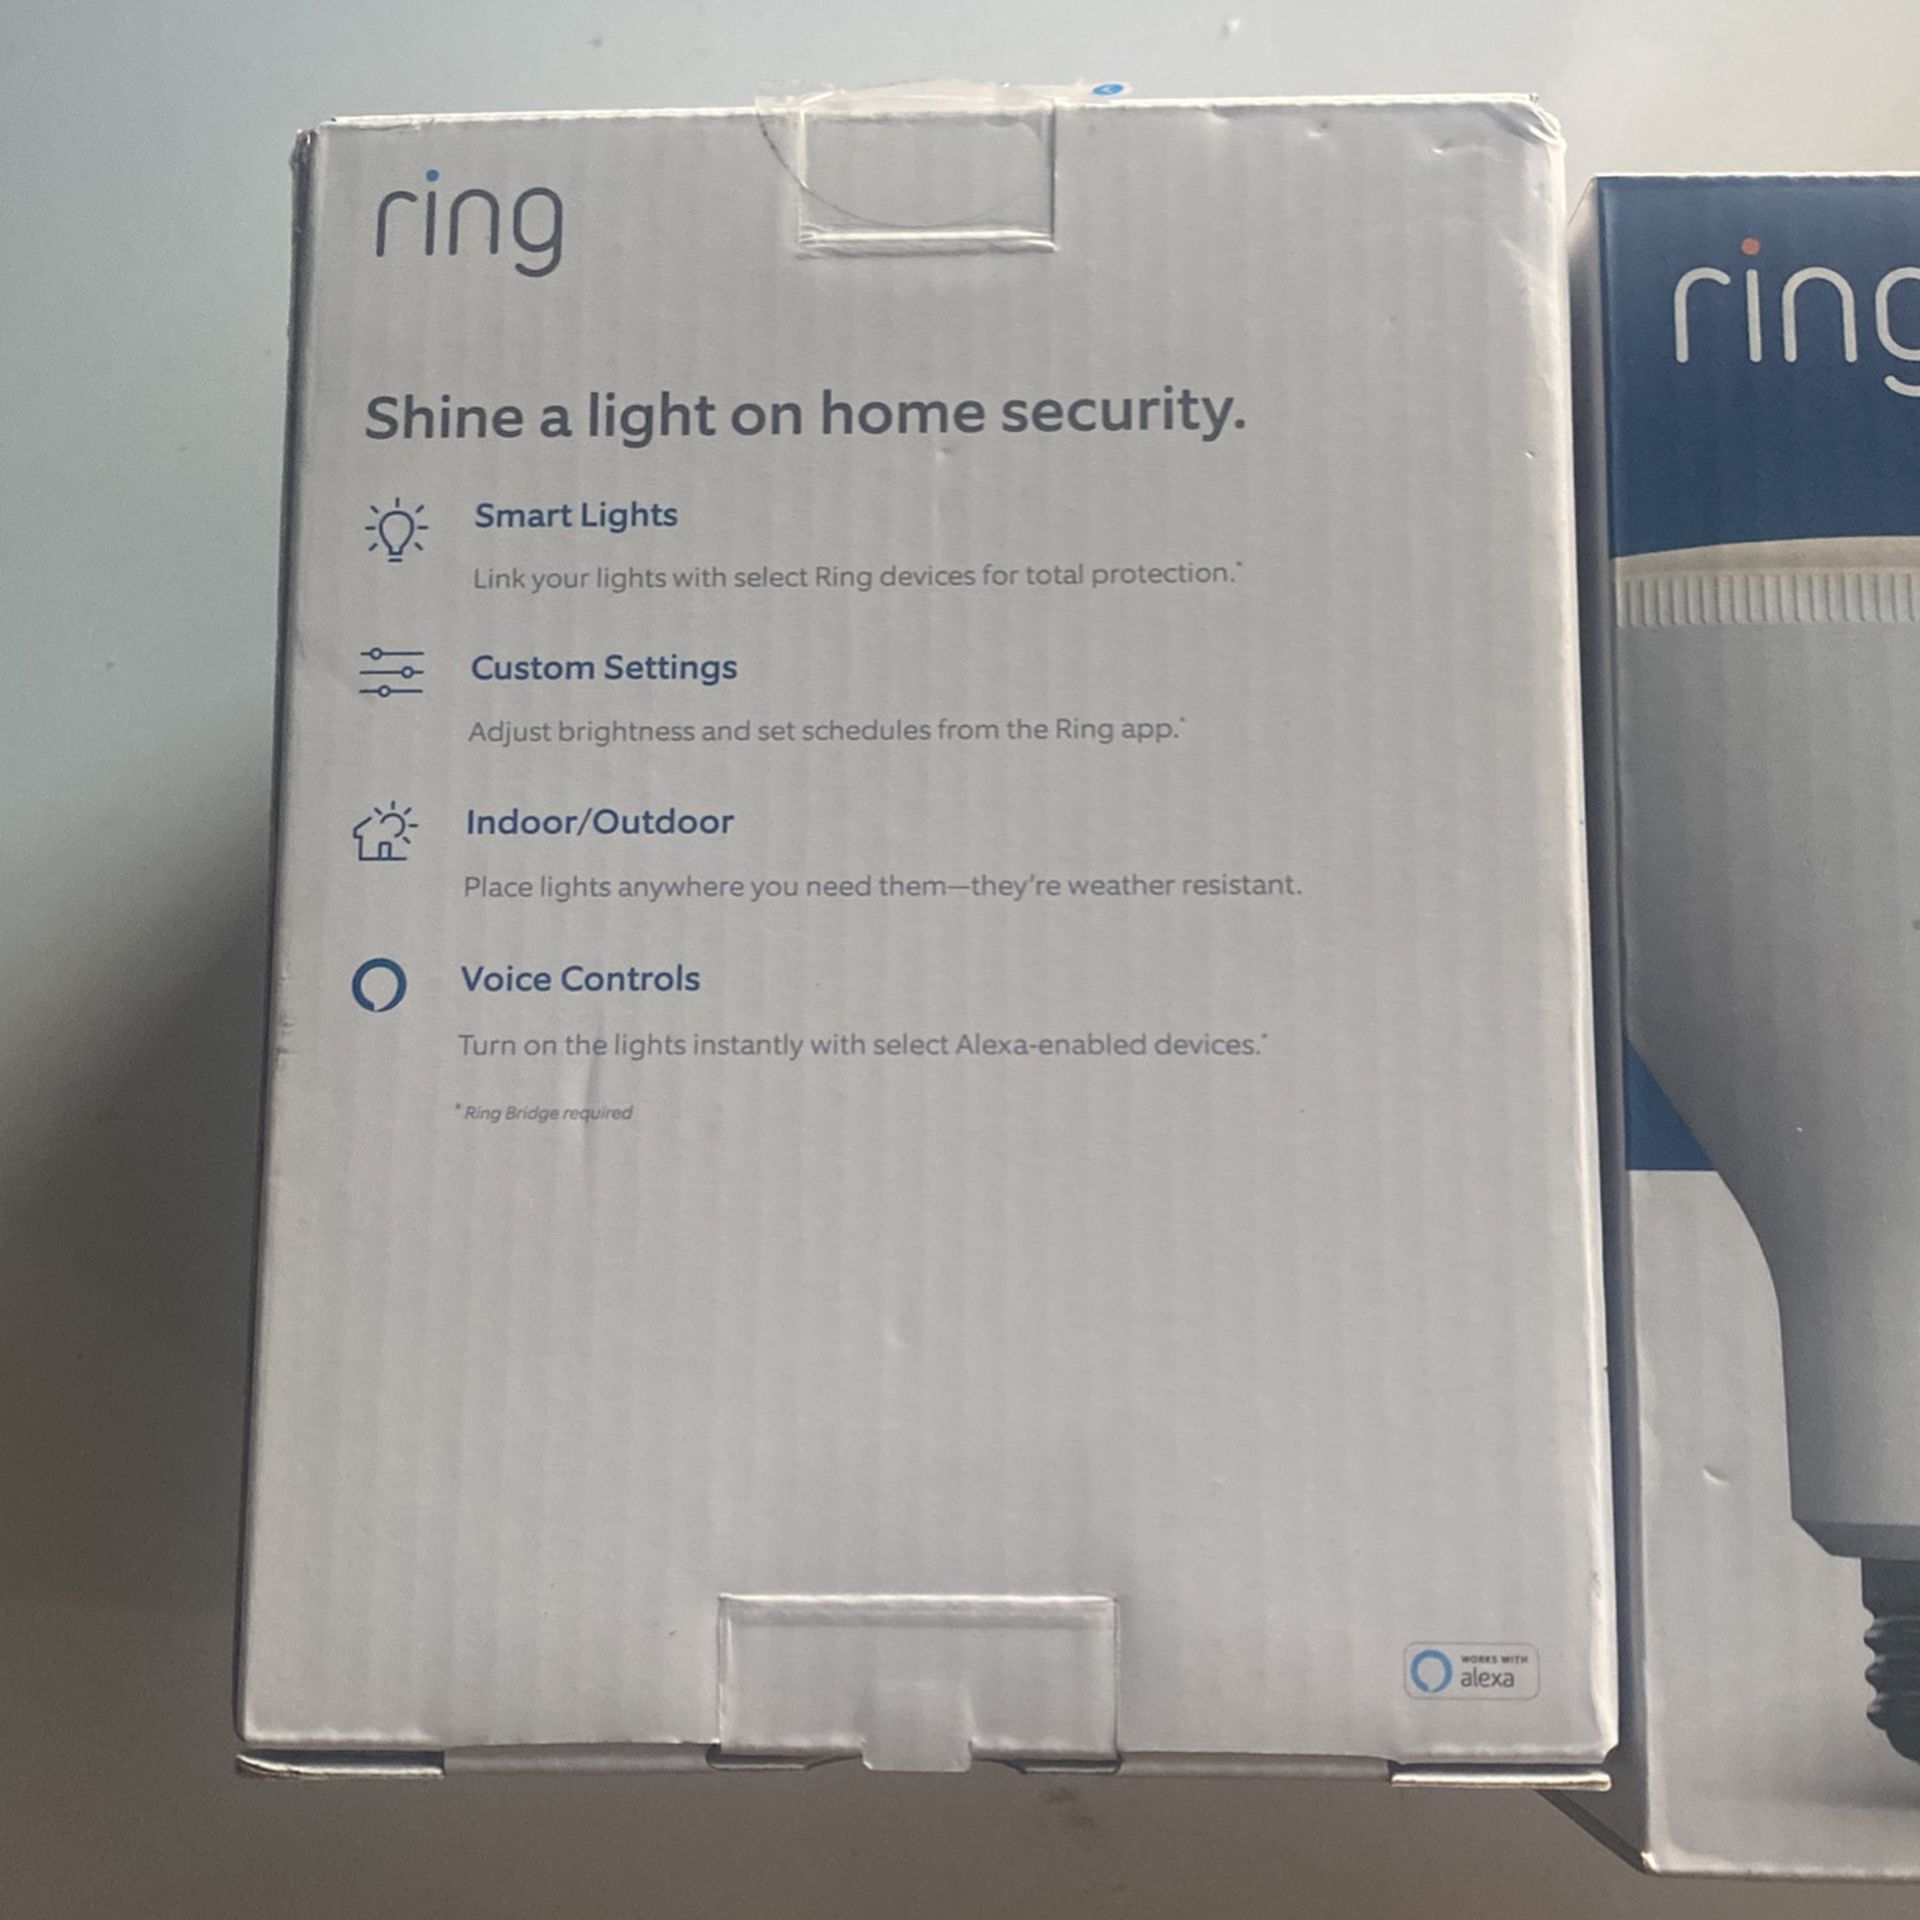 Ring Smart Light Bulb